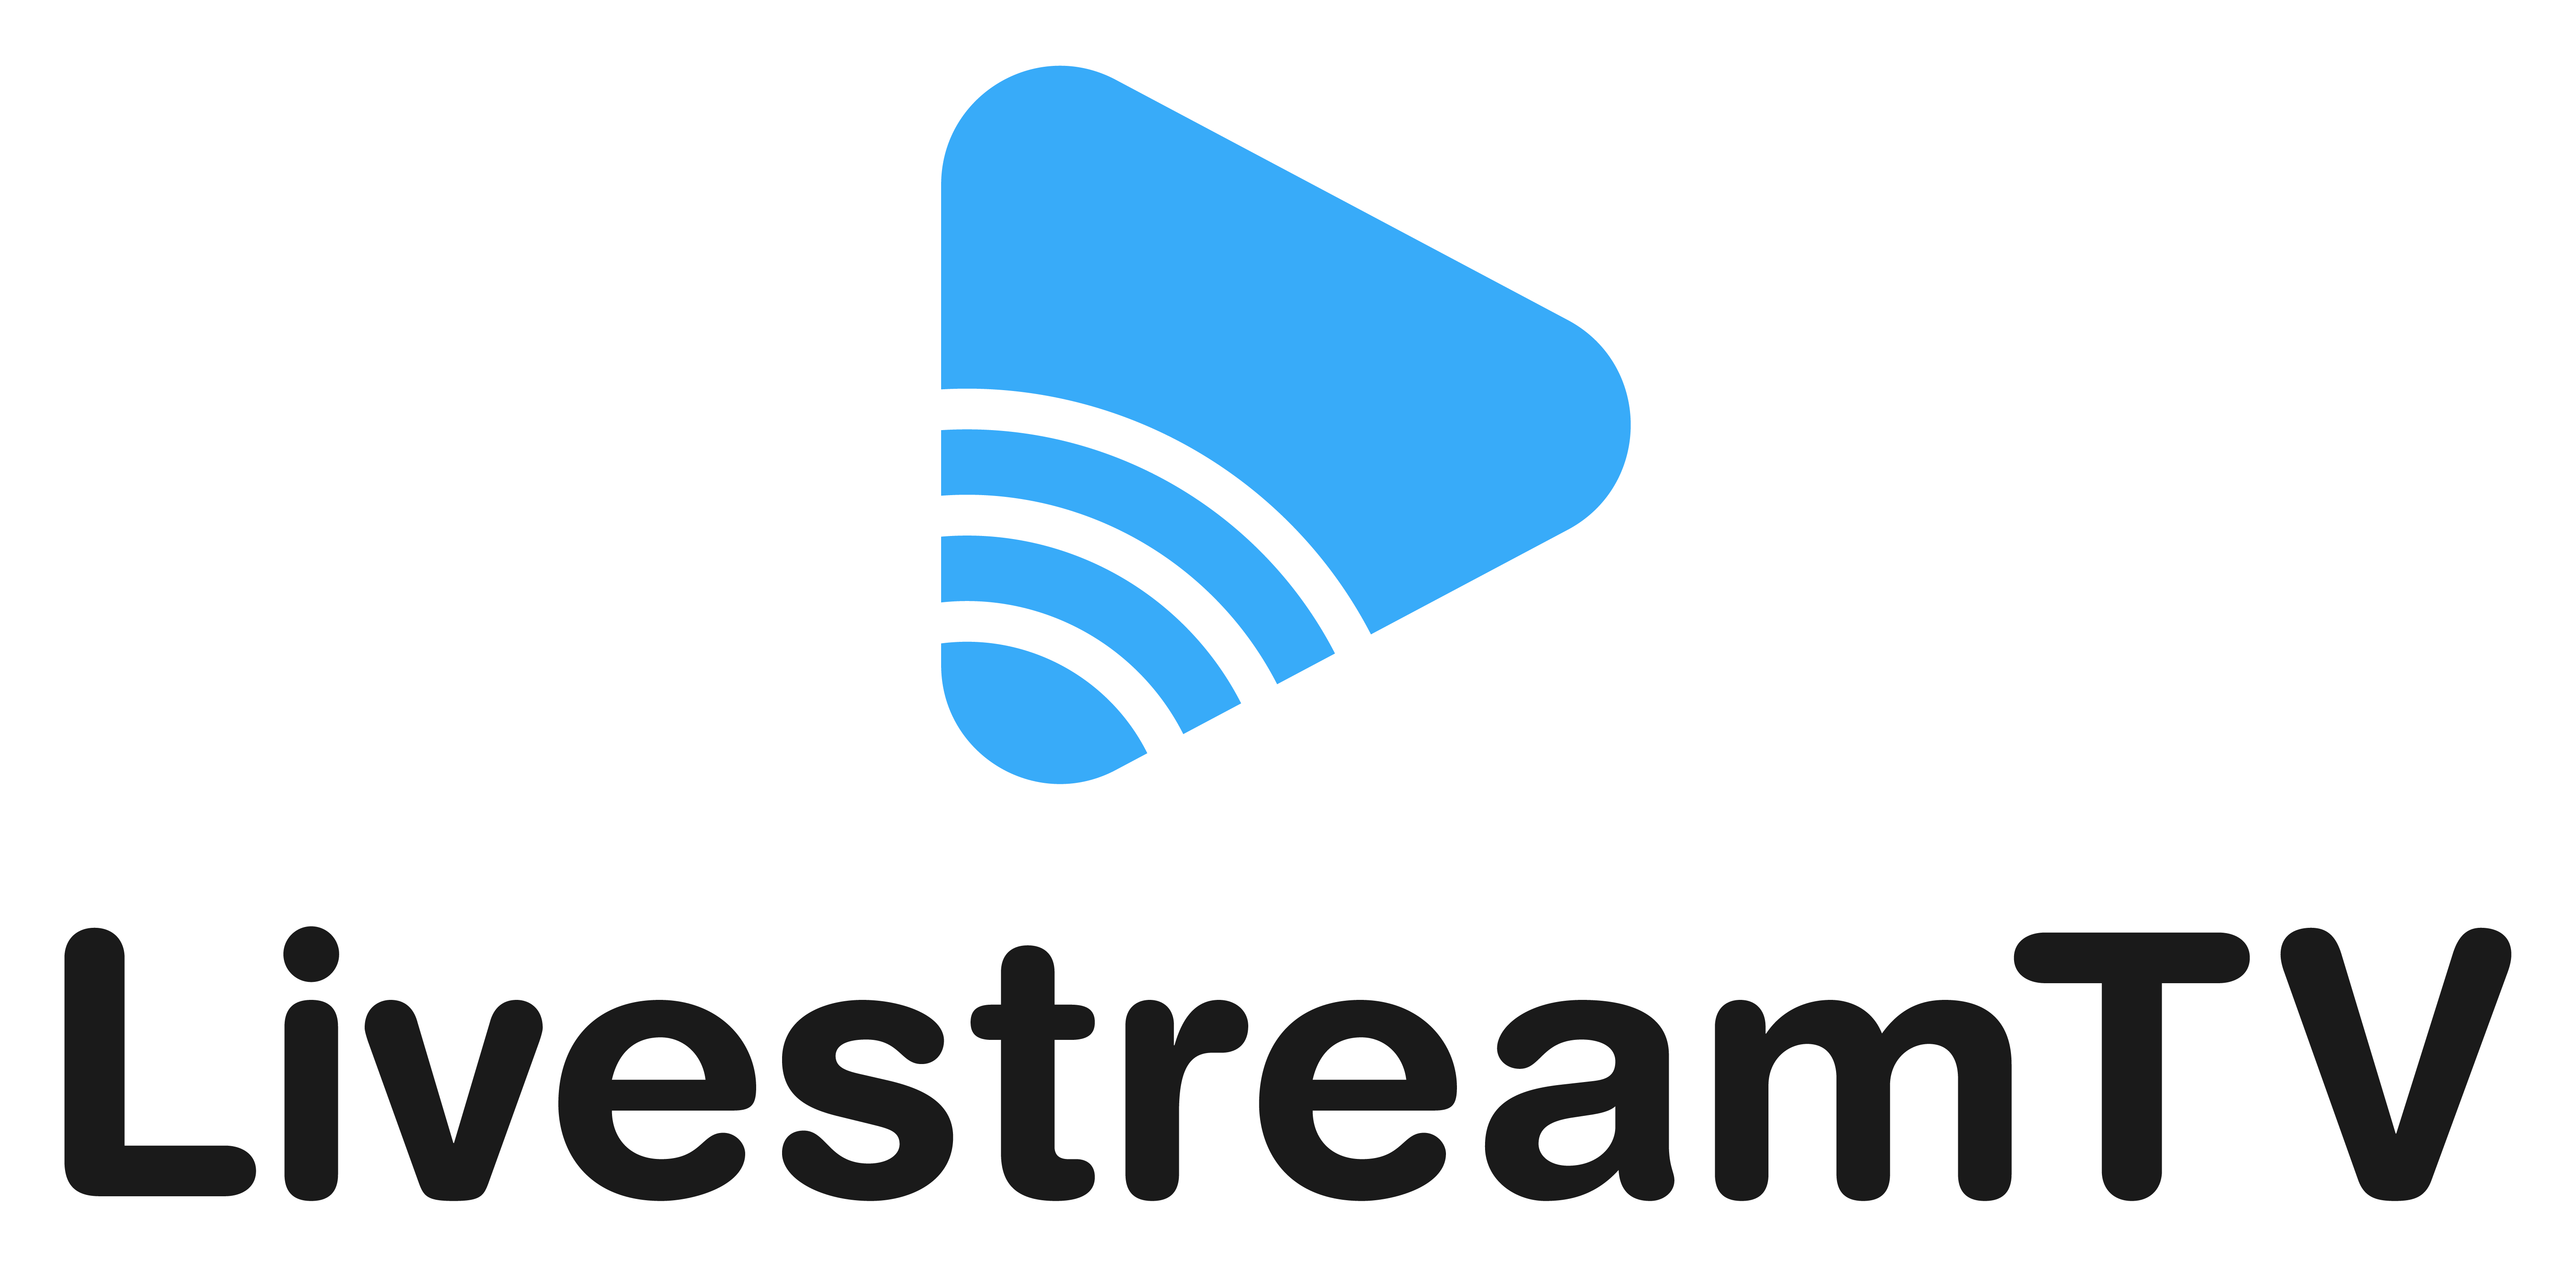 LivestreamTV